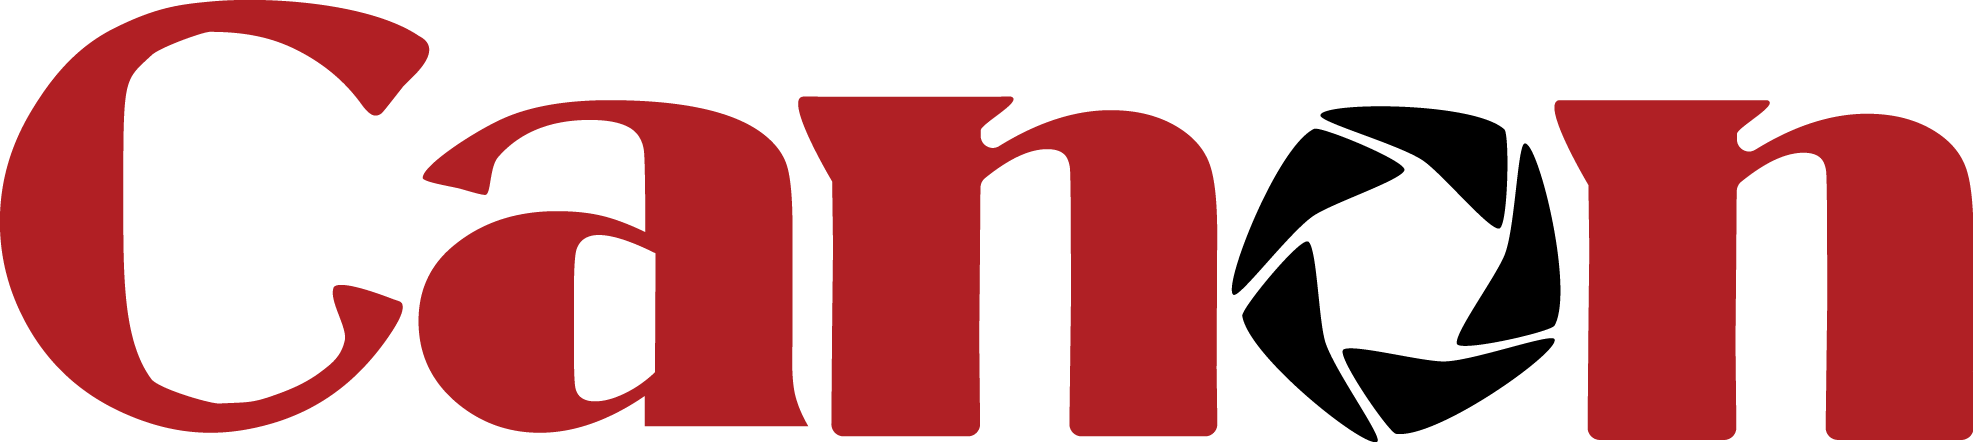 Canon Logo Redand Black